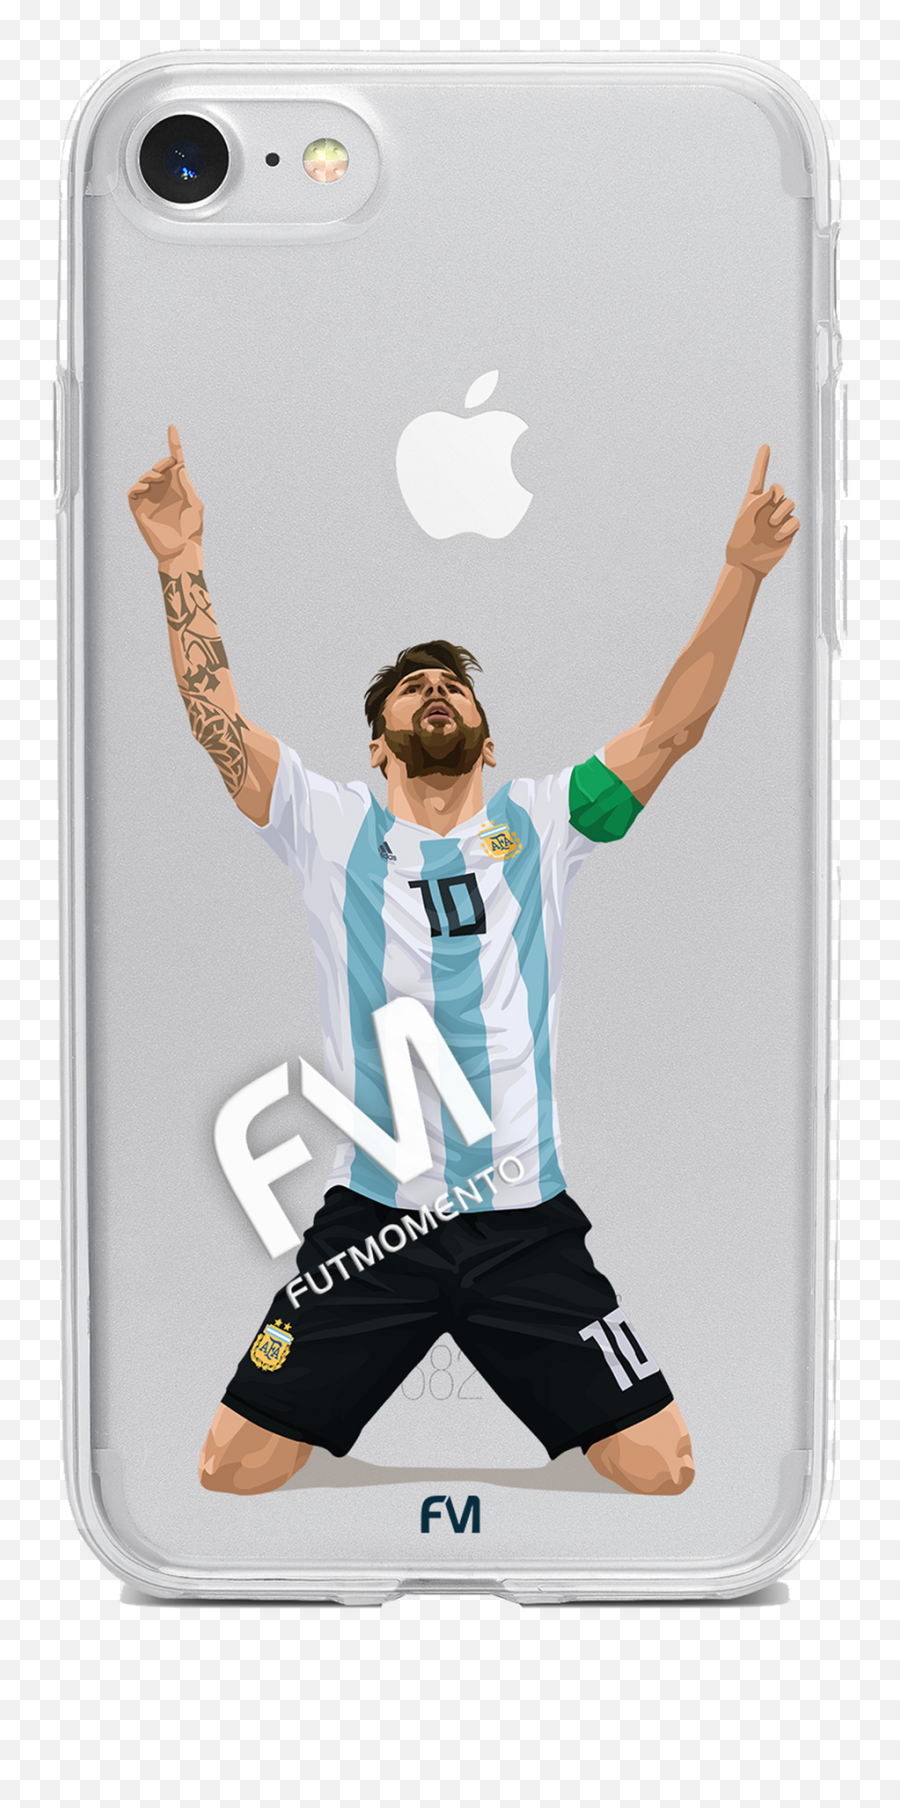 Lionel Messi U2013 Fm Cases Emoji,Messi Transparent